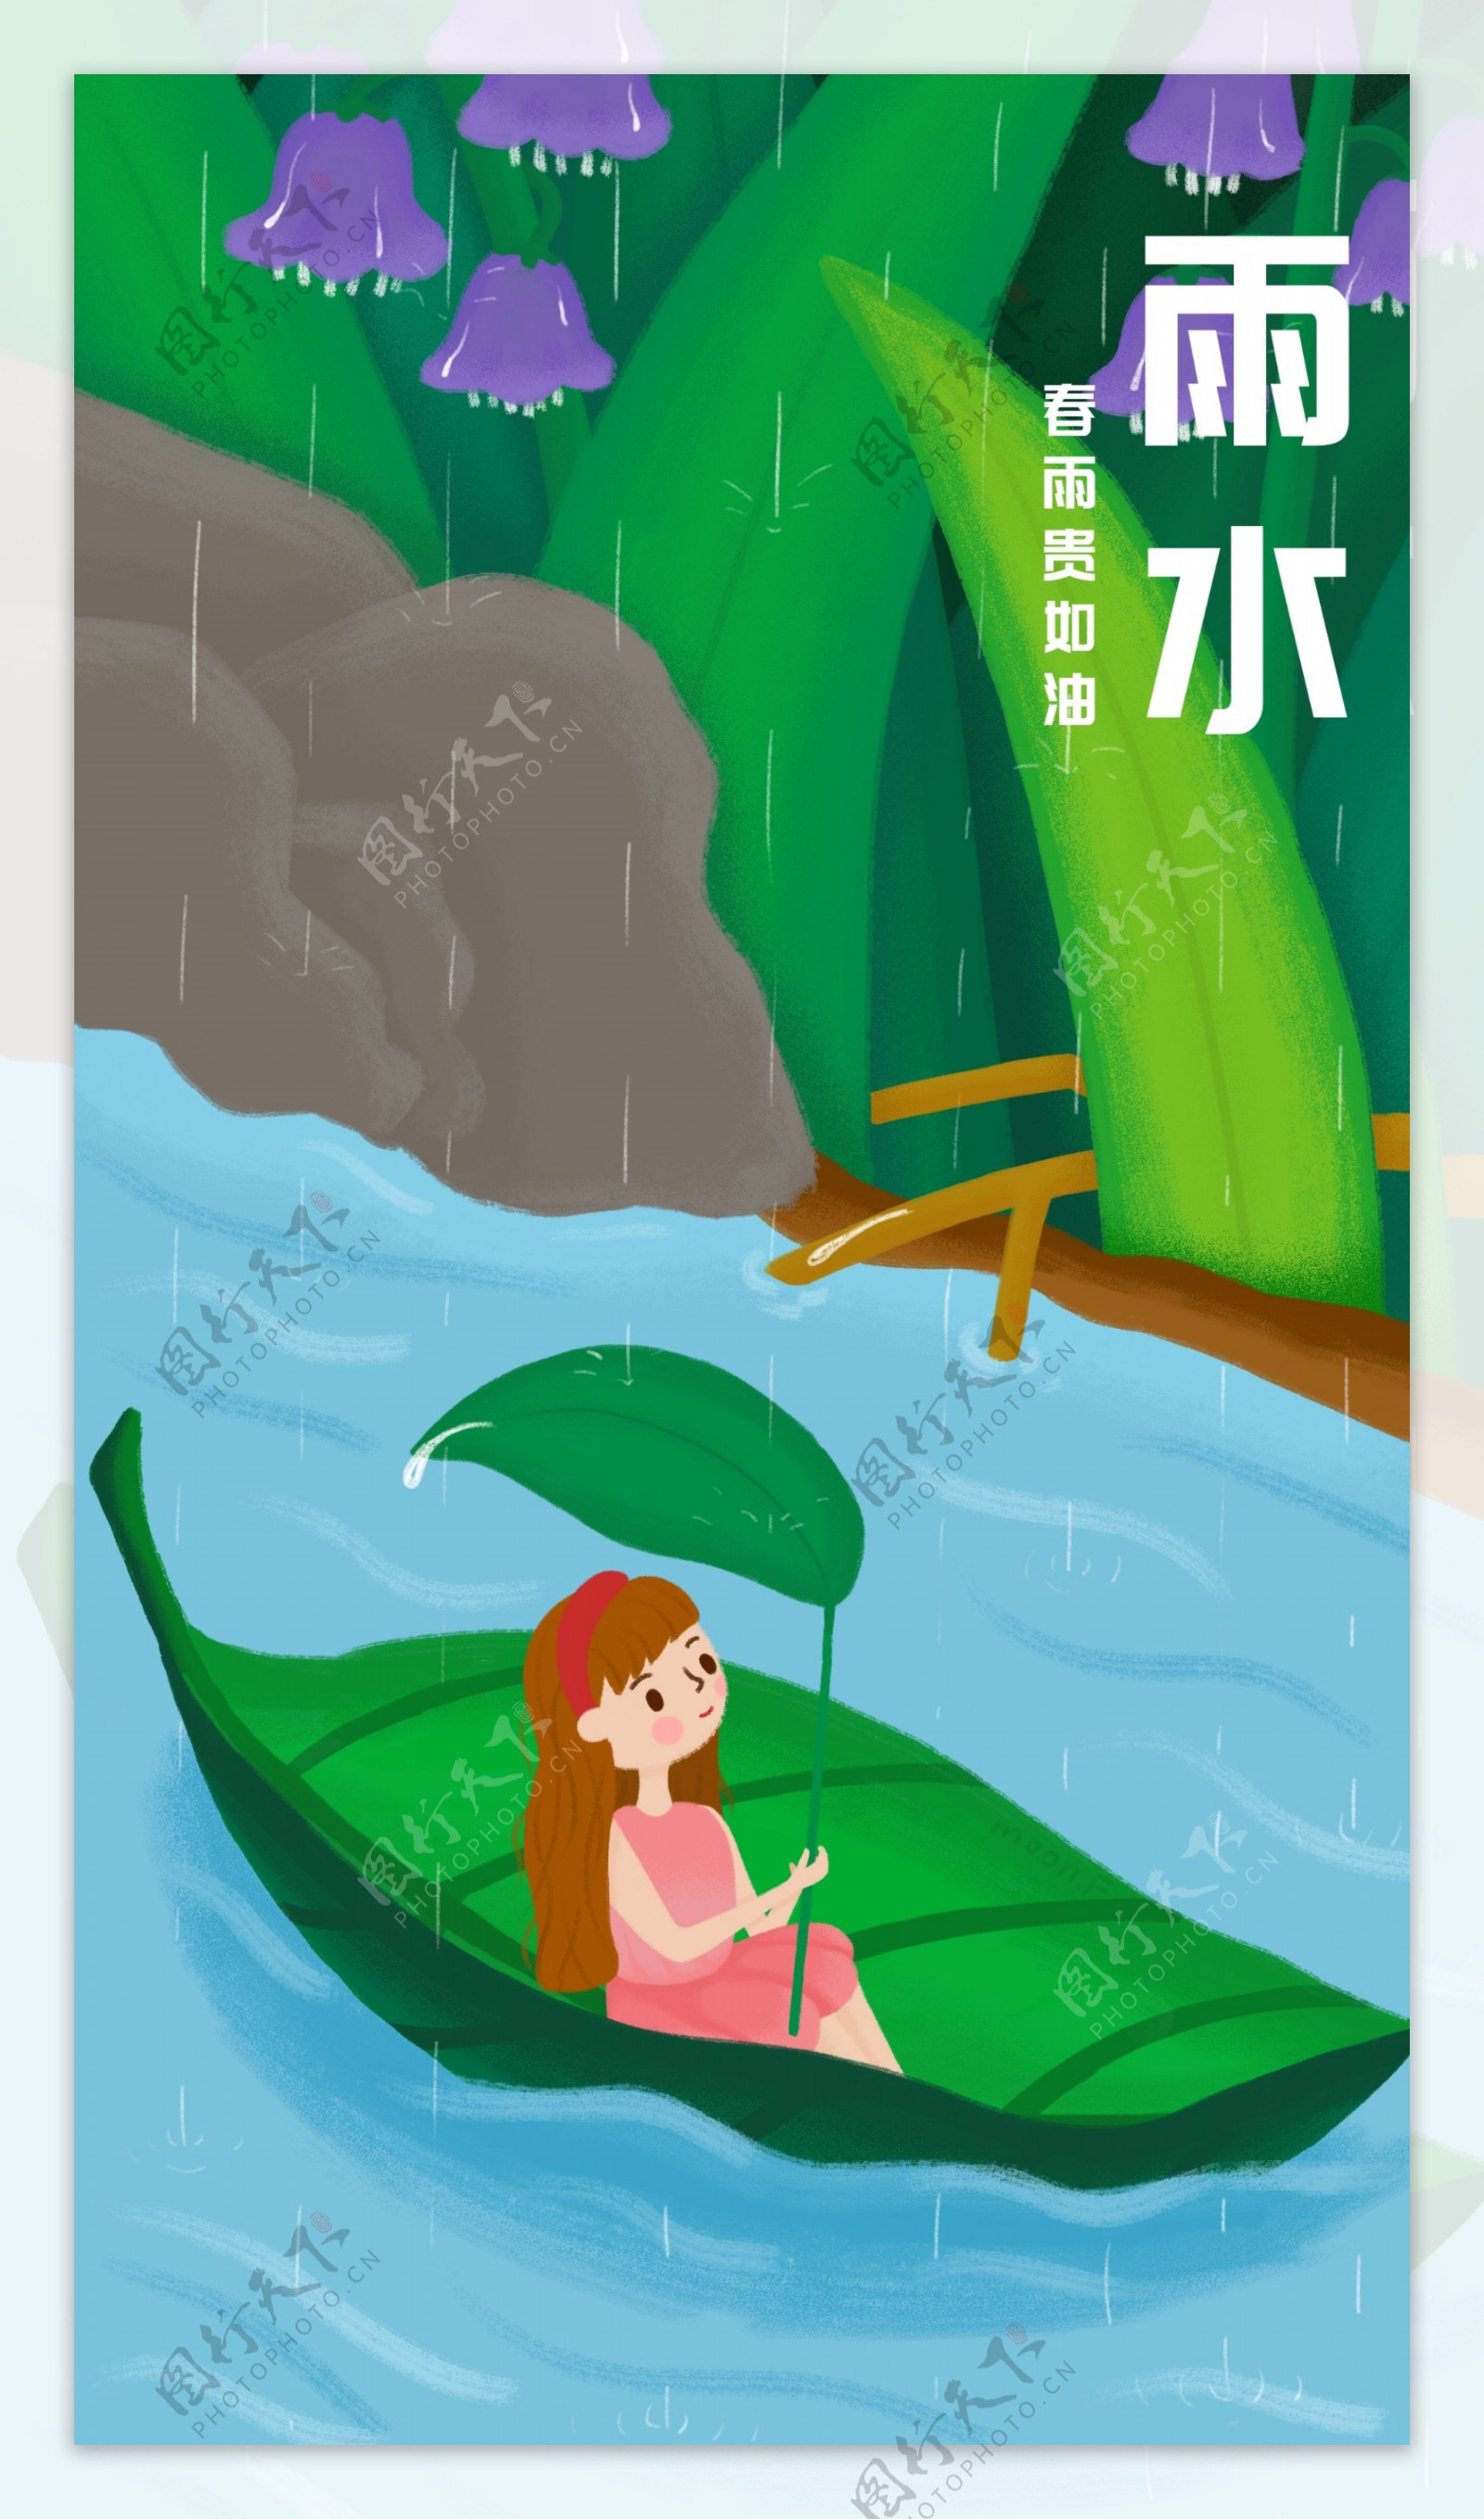 二十四节气之雨水原创手绘插画海报